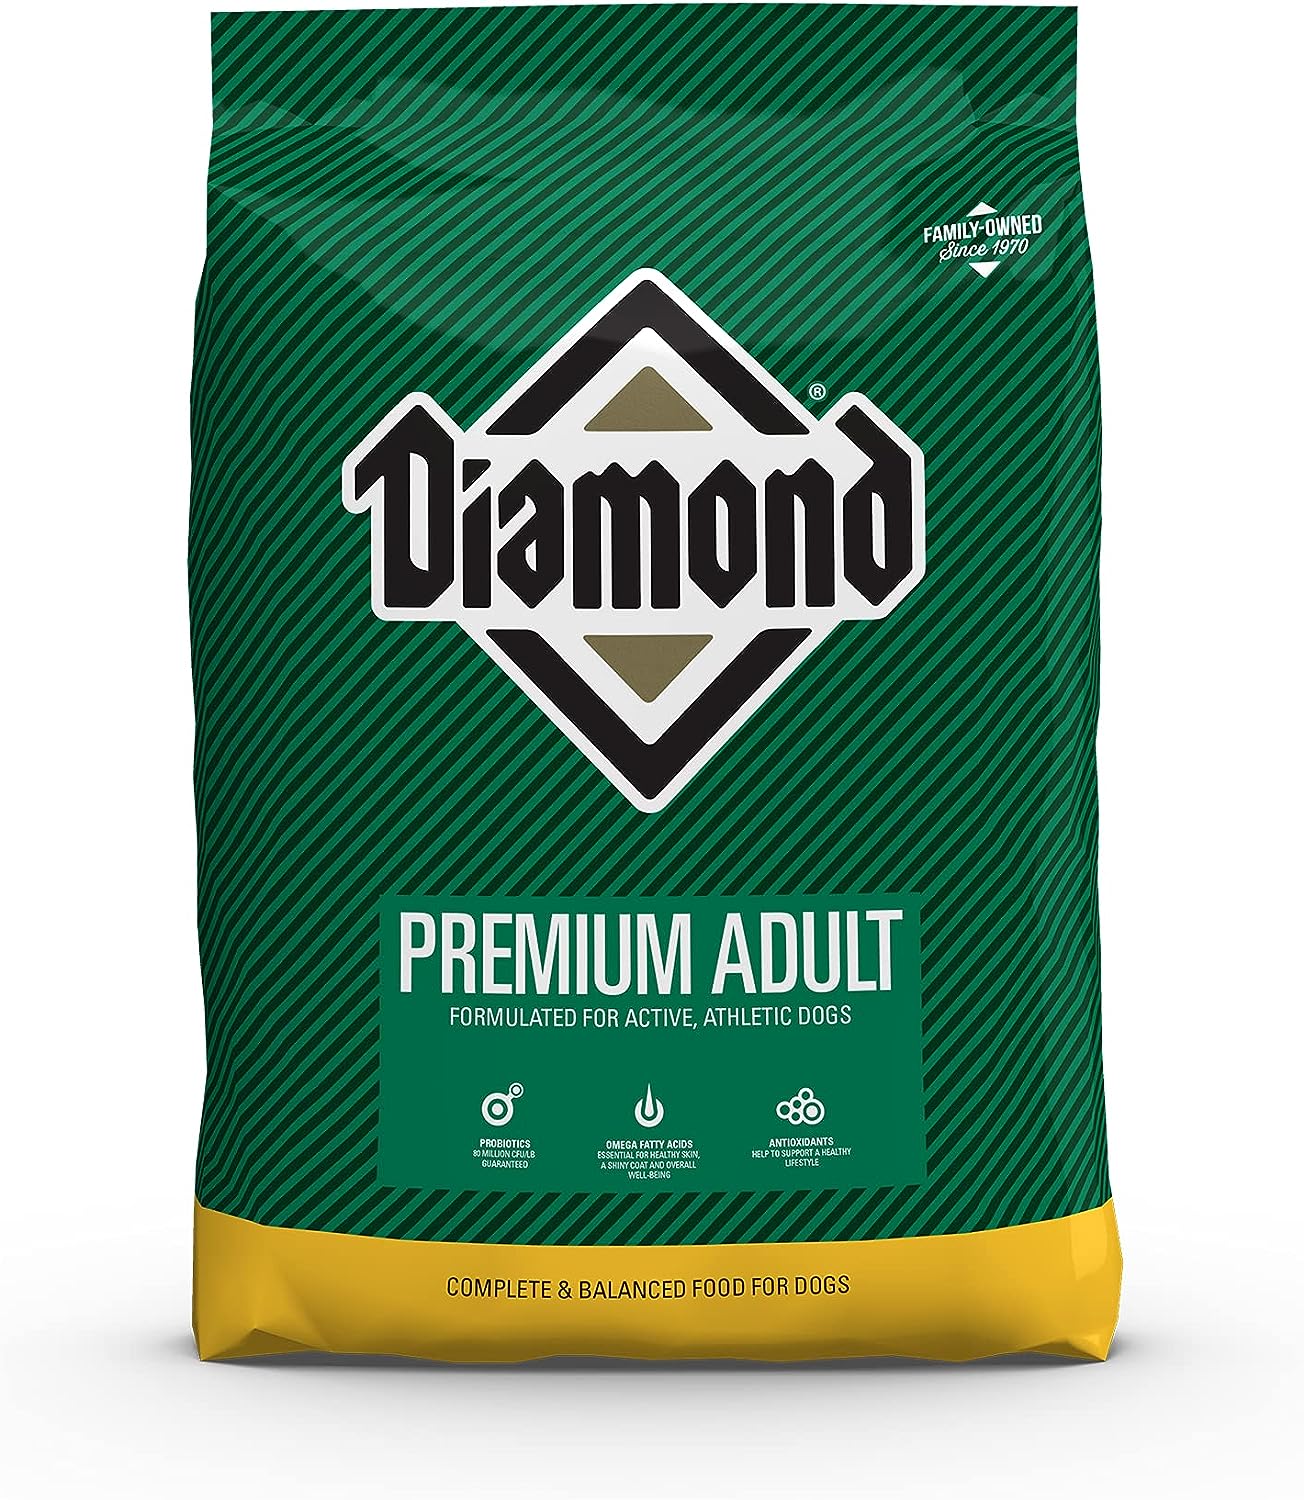 Diamond Premium Adult Dry Dog Food – Gallery Image 1